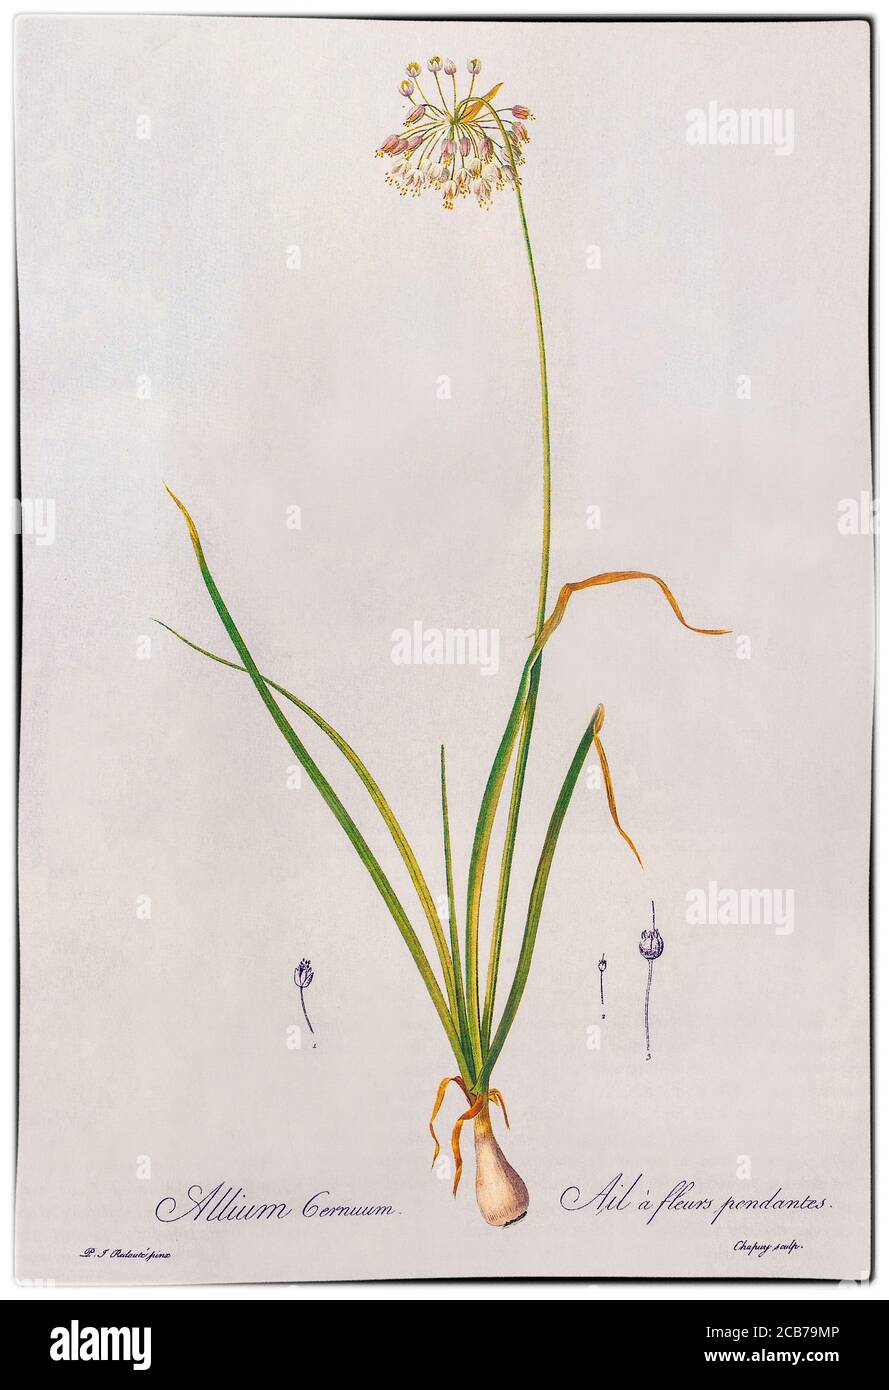 Allium cernuum, von Pierre-Joseph Redouté (1759-1840), war ein belgischer Maler und Botaniker, der für seine Aquarelle von Rosen, Lilien und anderen Blumen bei Malmaison bekannt war, von denen viele als große Farbstiche veröffentlicht wurden. Er wurde als der größte botanische Illustrator aller Zeiten bezeichnet. Allium cernuum wird gemeinhin als nickende Wildzwiebel bezeichnet und ist in Missouri in den USA auf felsigen Böden auf Lichtung, Felskanten, offenen Wäldern und Hängen beheimatet. Stockfoto